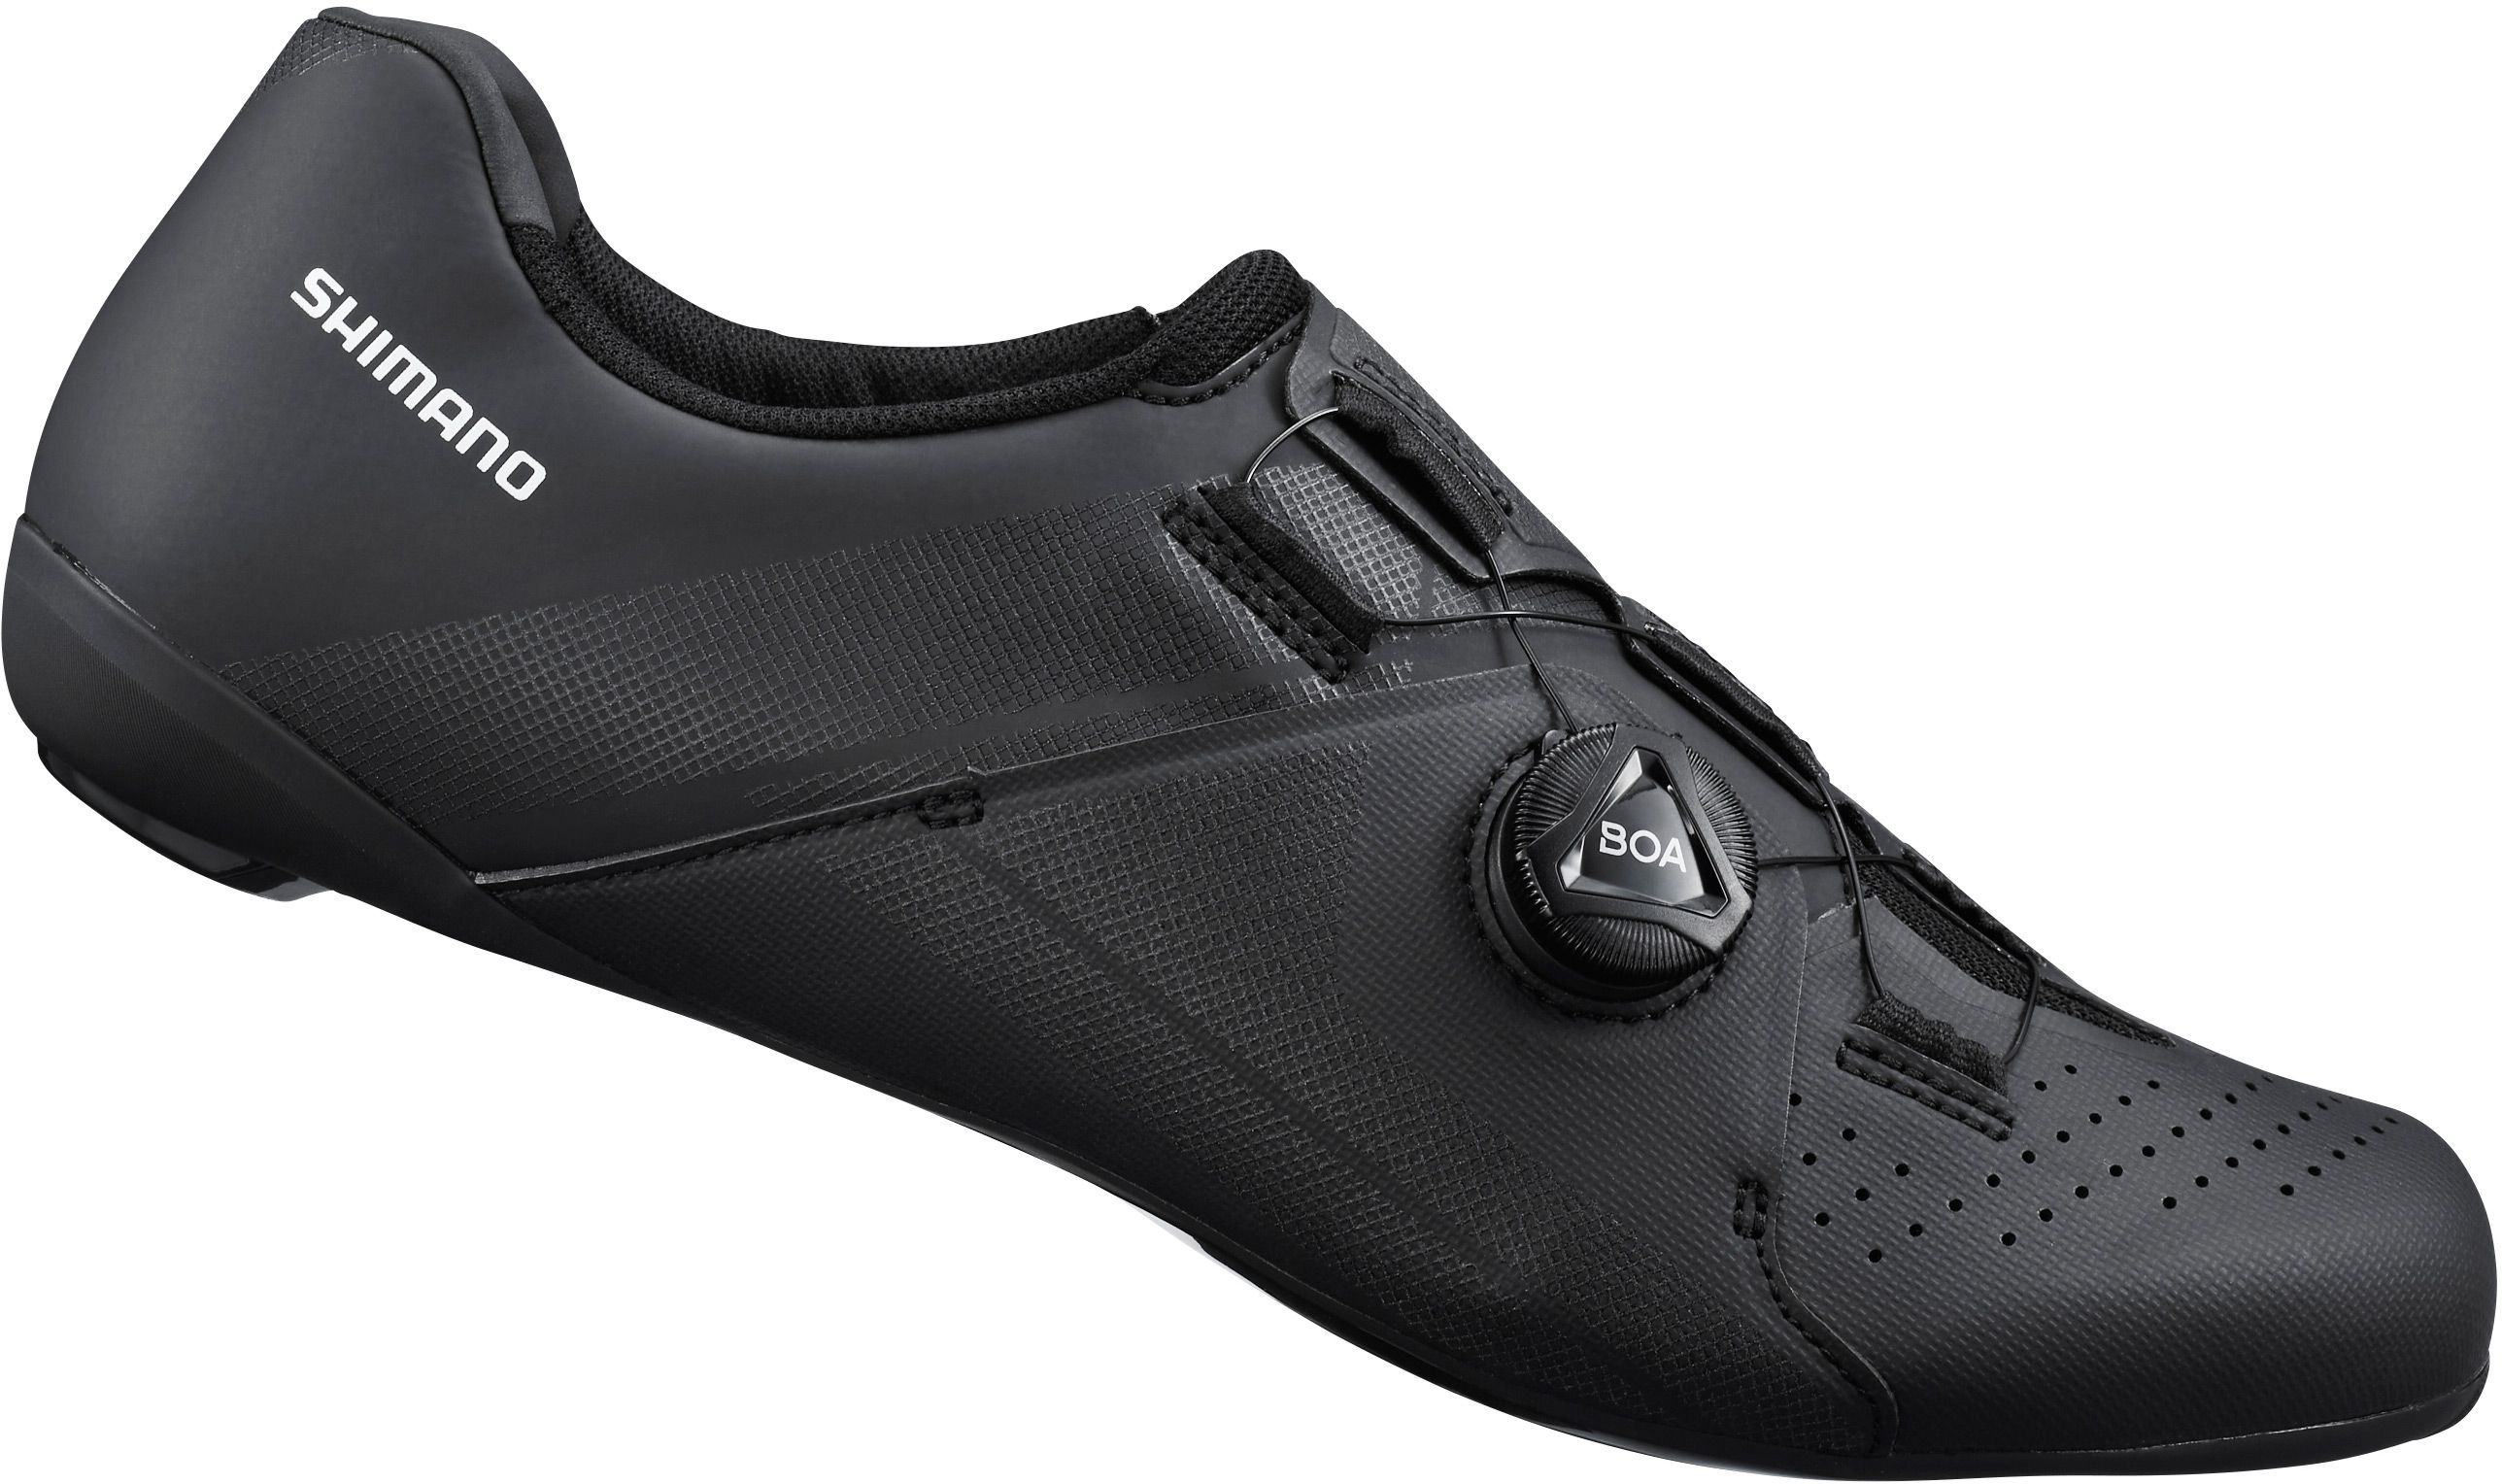 Shimano Rc3 (rc300) Spd Sl Road Shoes Black